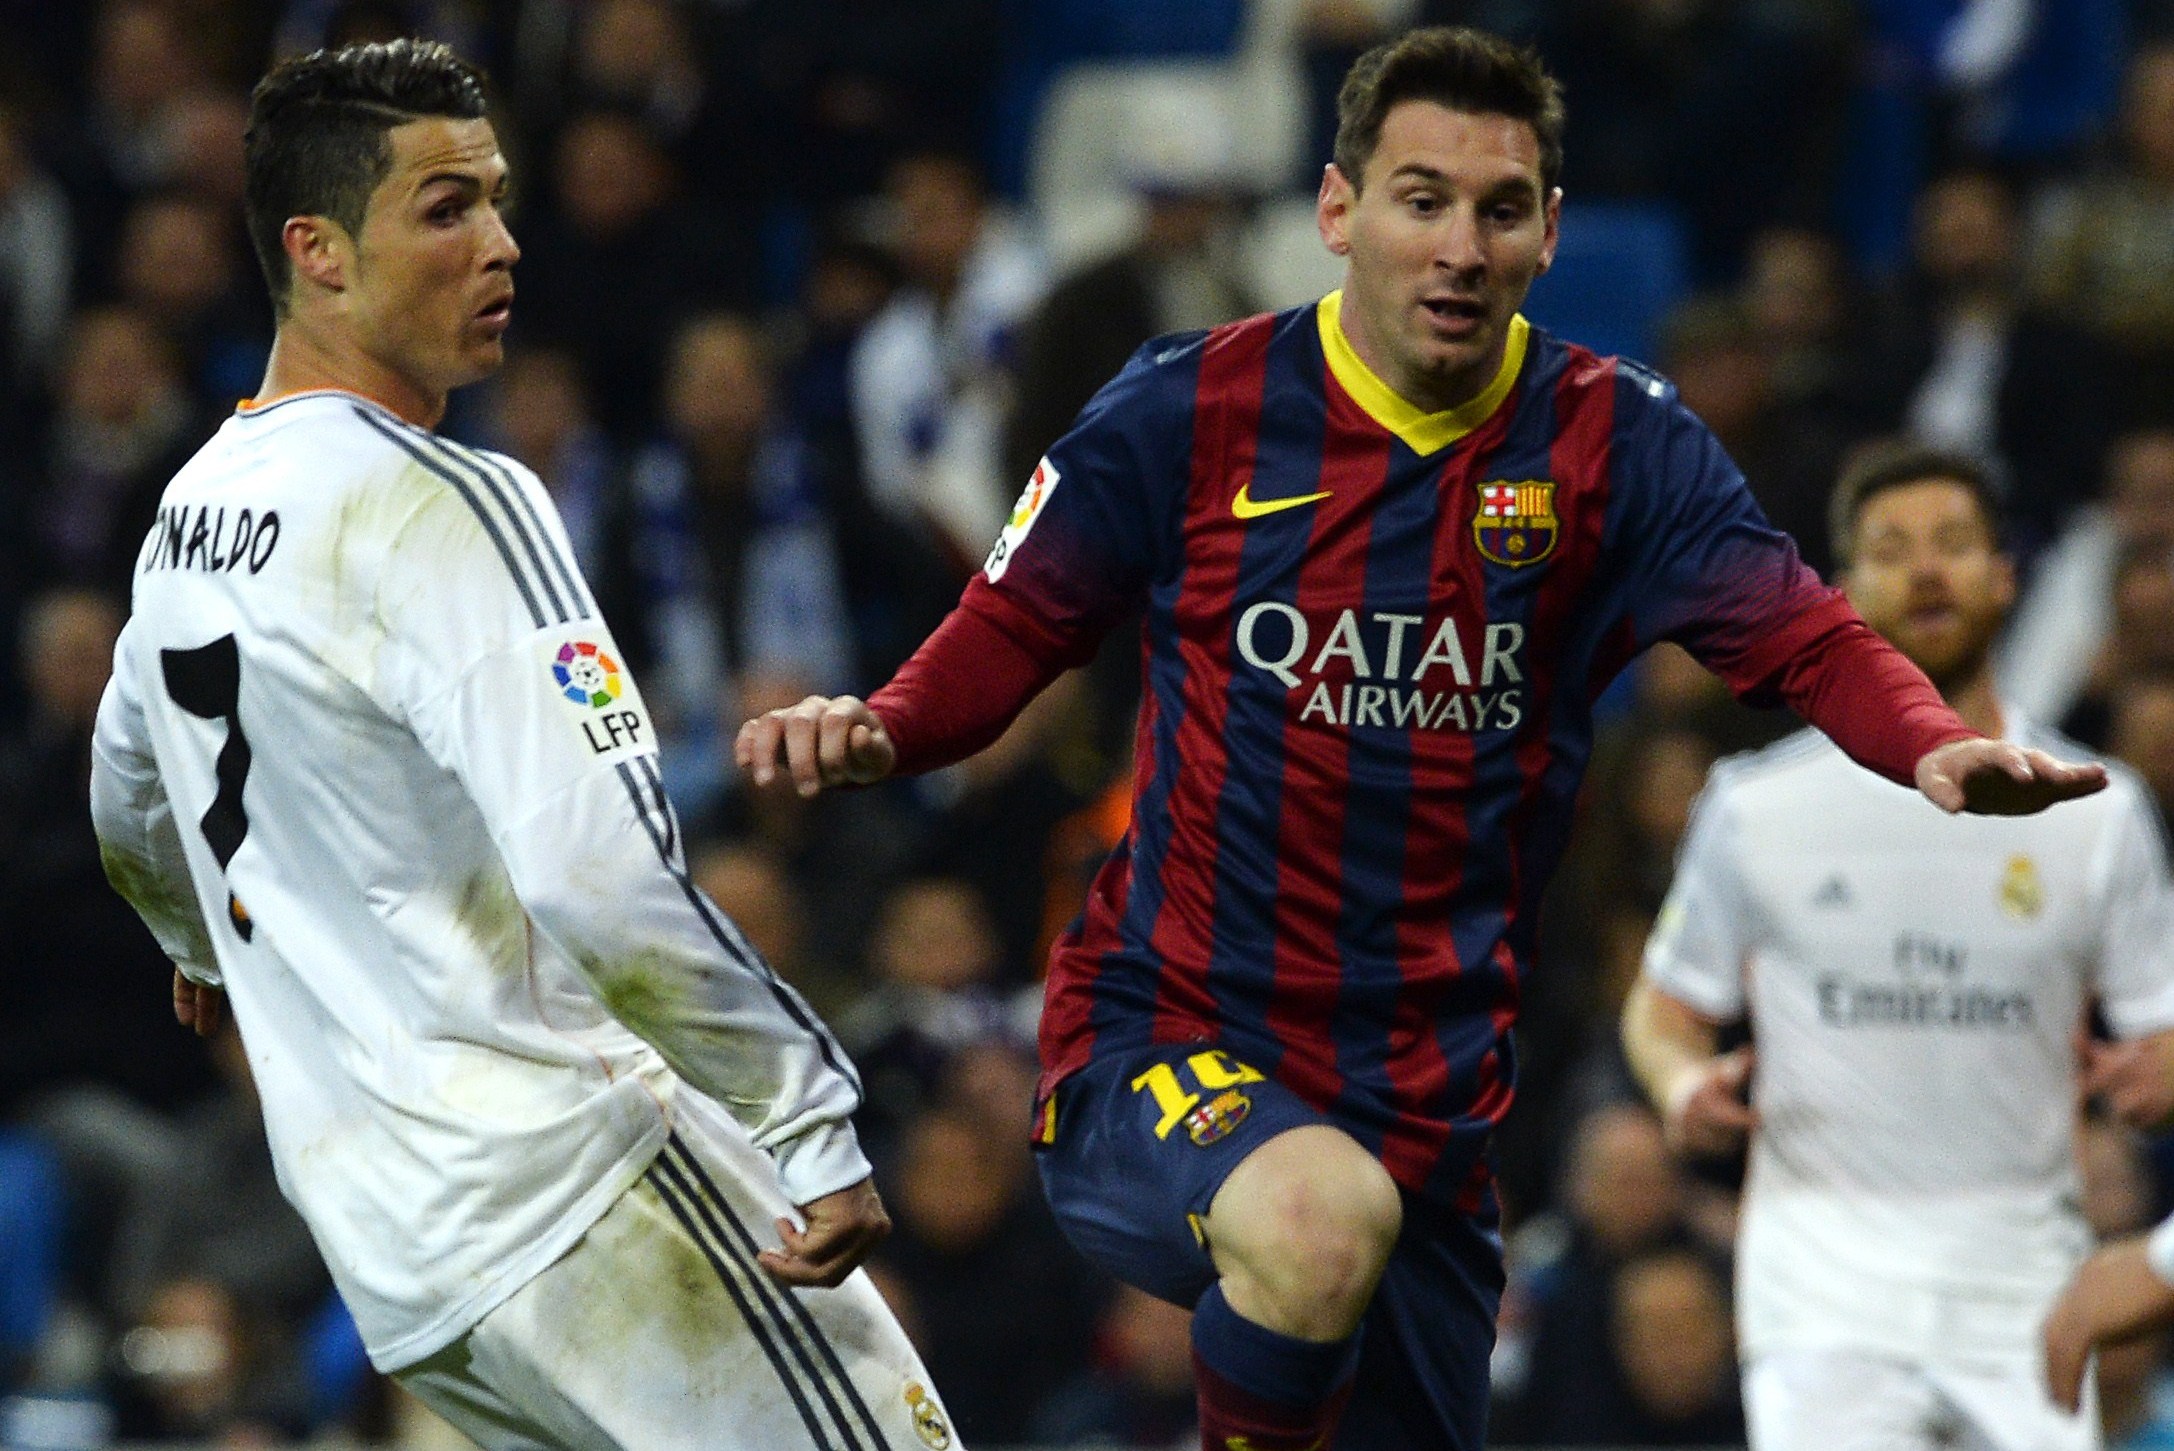 Messi–Ronaldo rivalry - Wikipedia